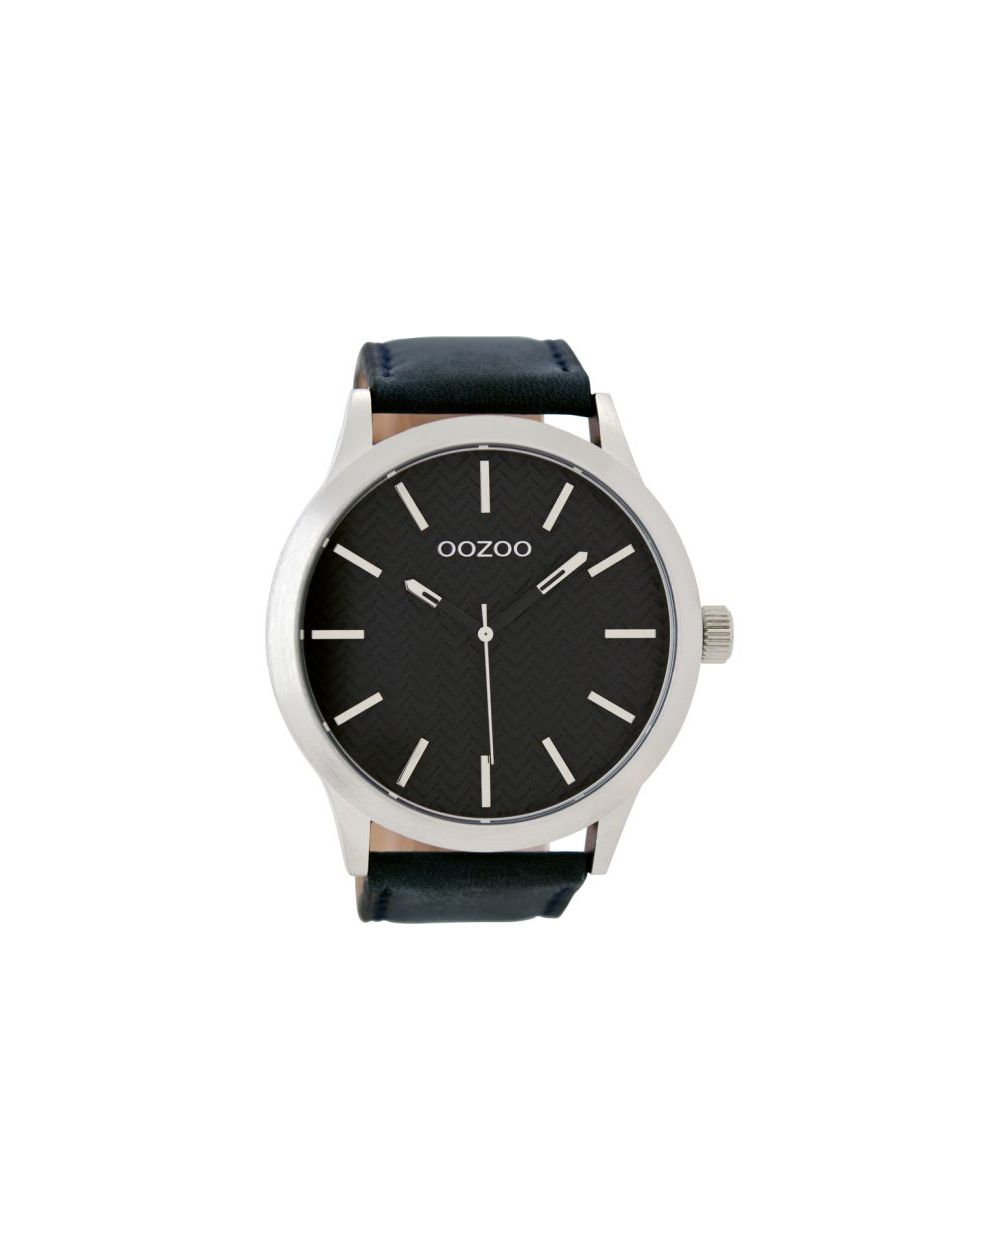 Oozoo montre/watch/horloge C9013